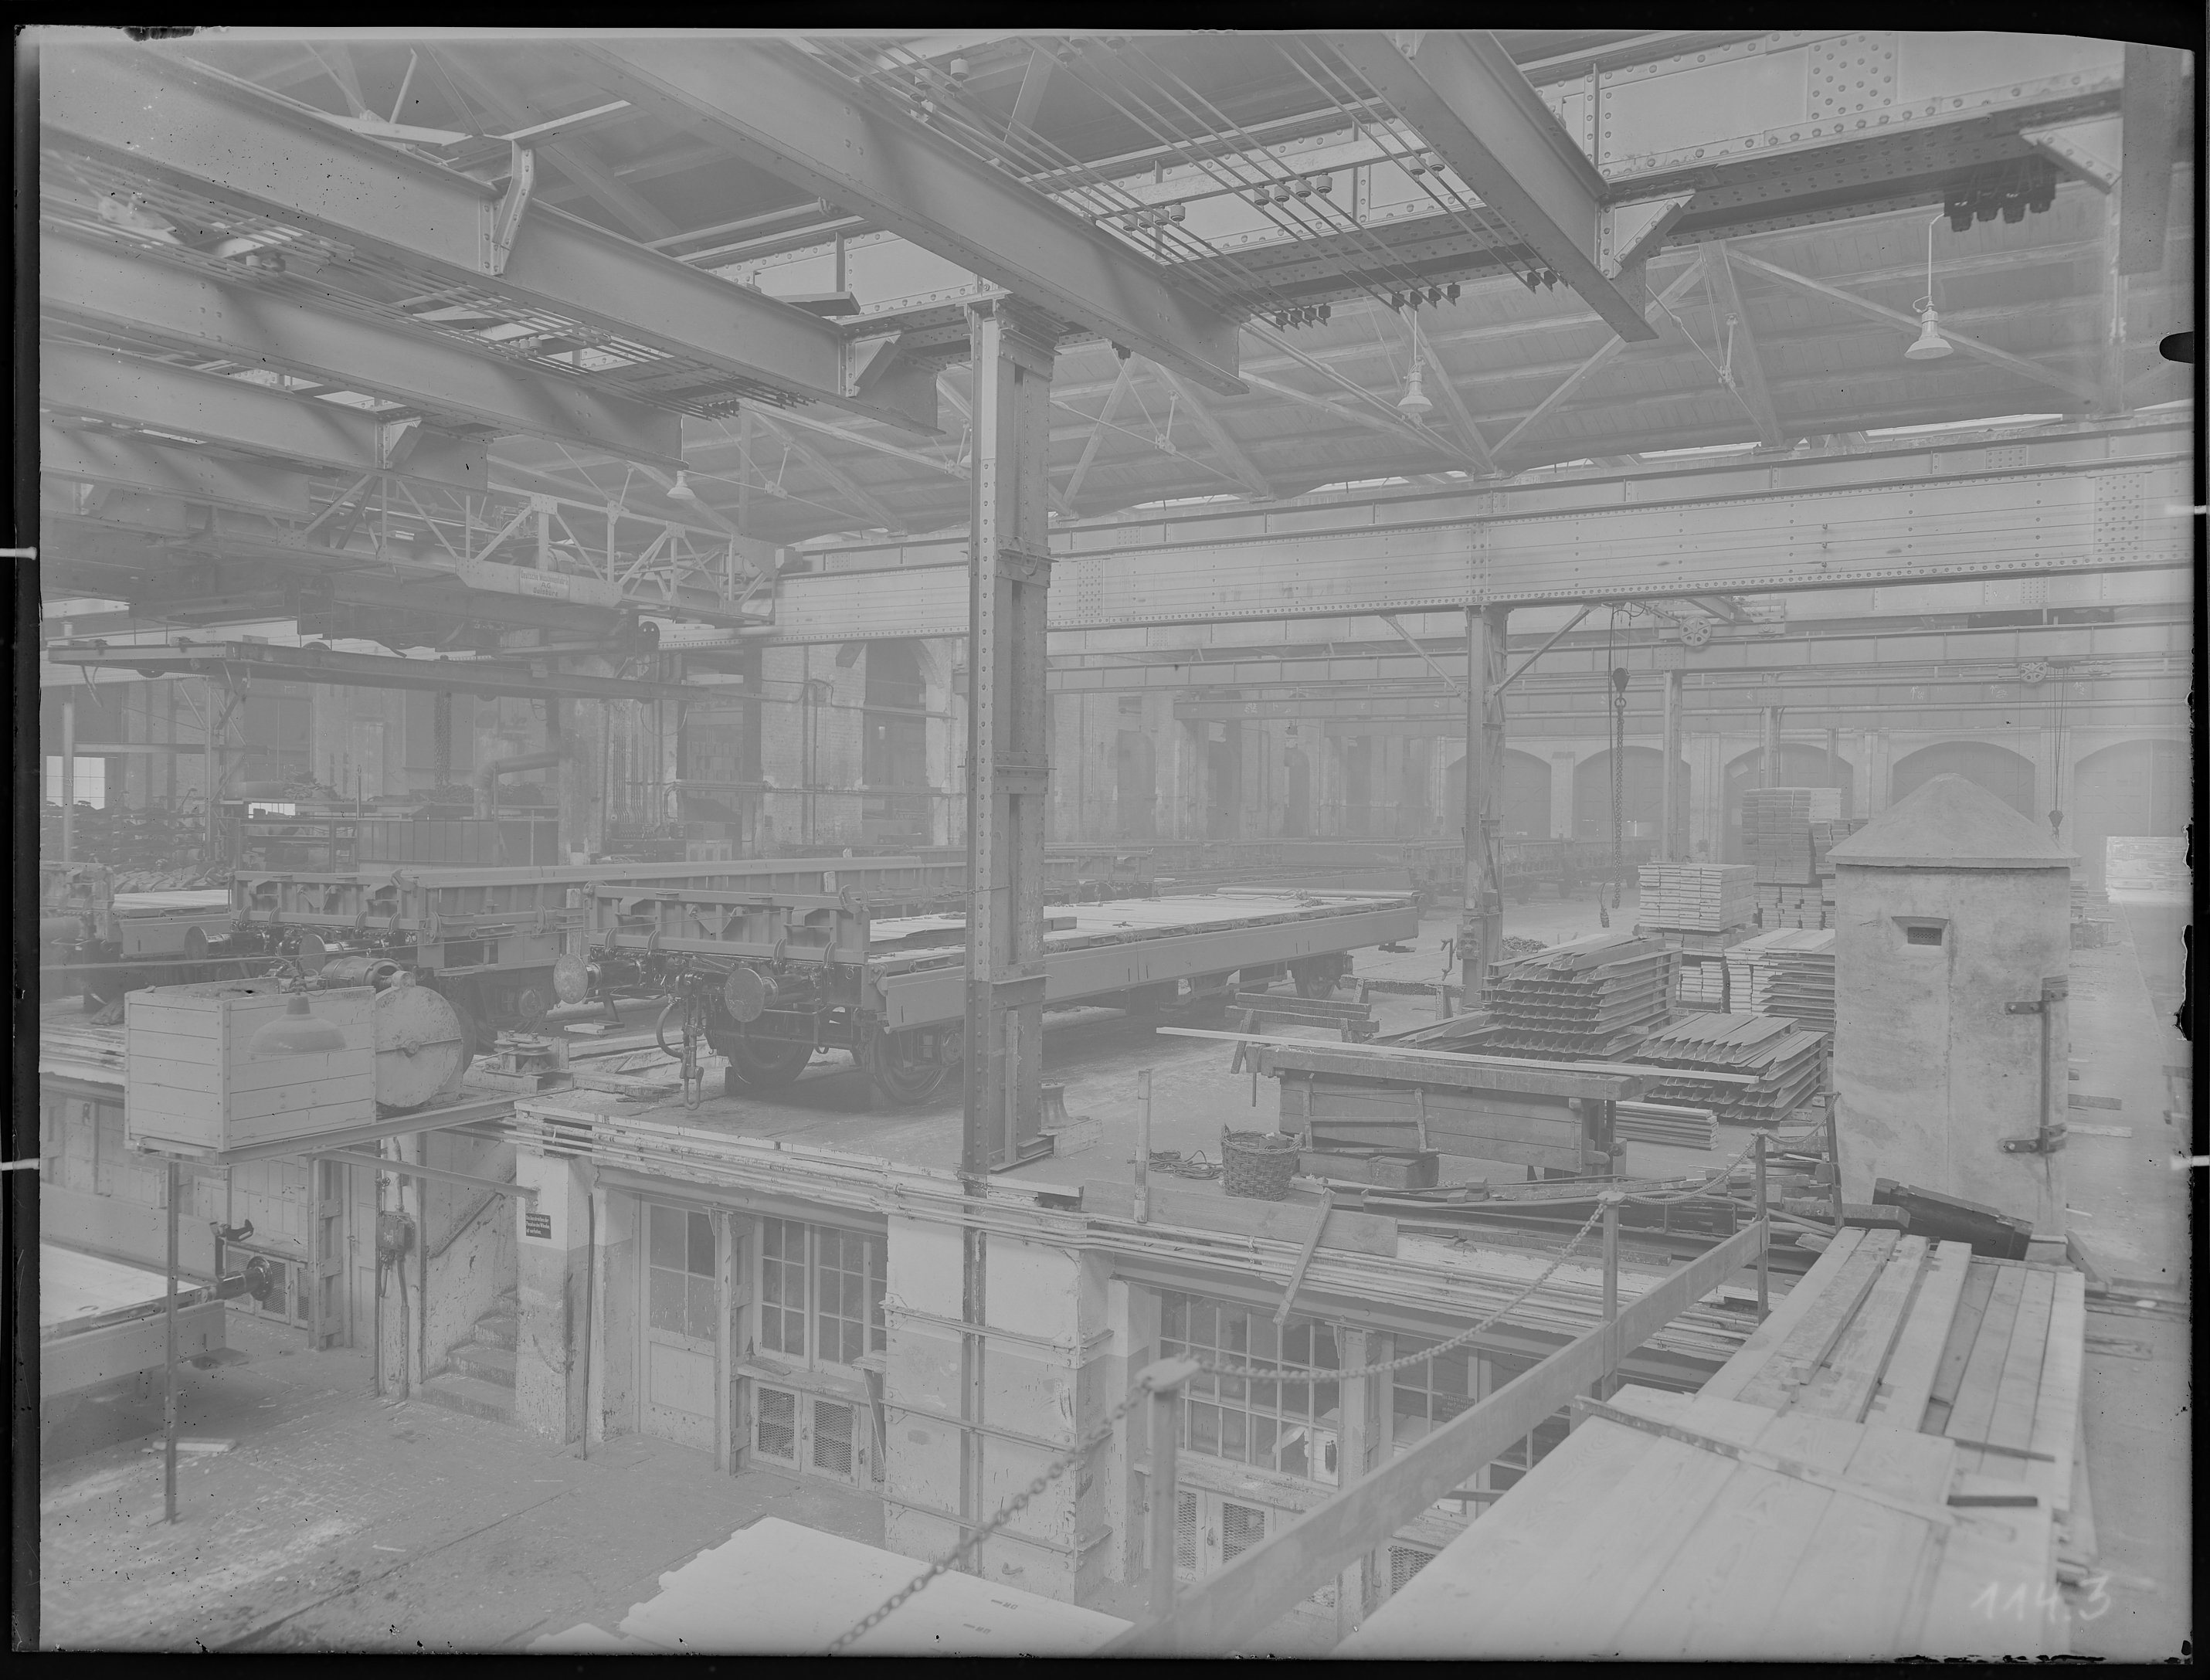 Fotografie: Waggon- und Maschinenbau AG Görlitz, Werk II, Werkhalle (Innenansicht), Güterwagenbau, 1930 - 1938? (Verkehrsmuseum Dresden CC BY-NC-SA)